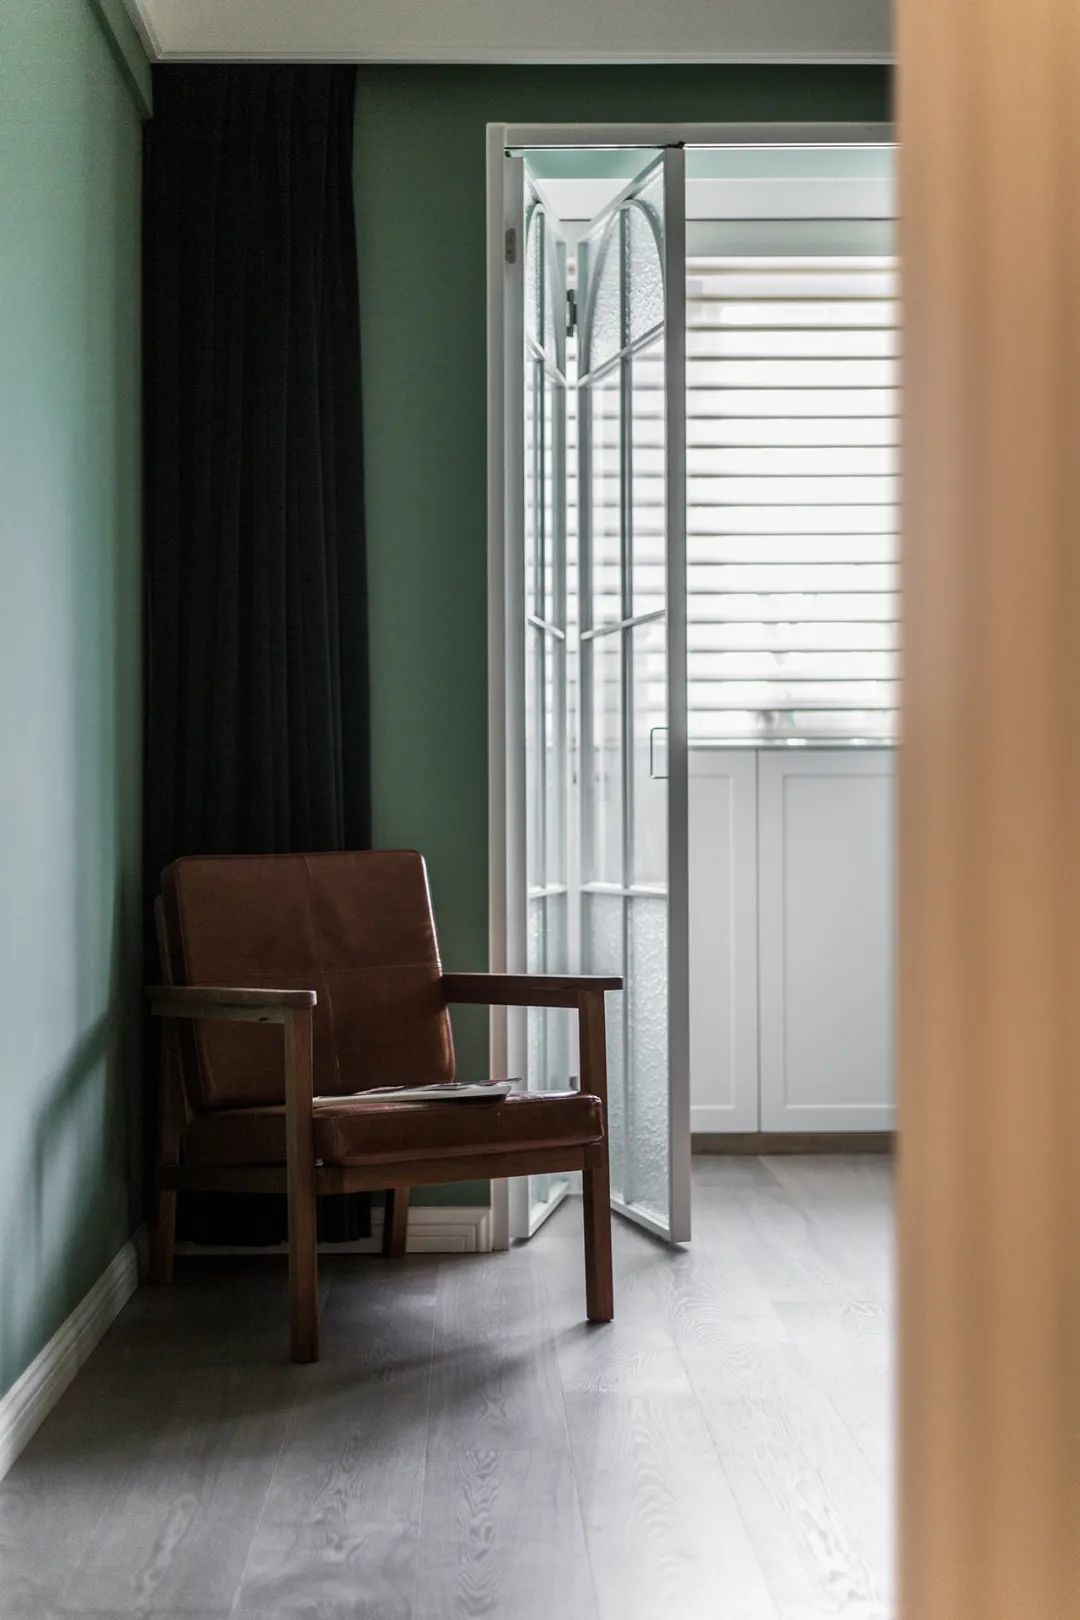 Pha trộn giữa hiện đại và hoài cổ, căn hộ 59 m2 đẹp mê ly với sắc xanh olive độc đáo - Ảnh 16.